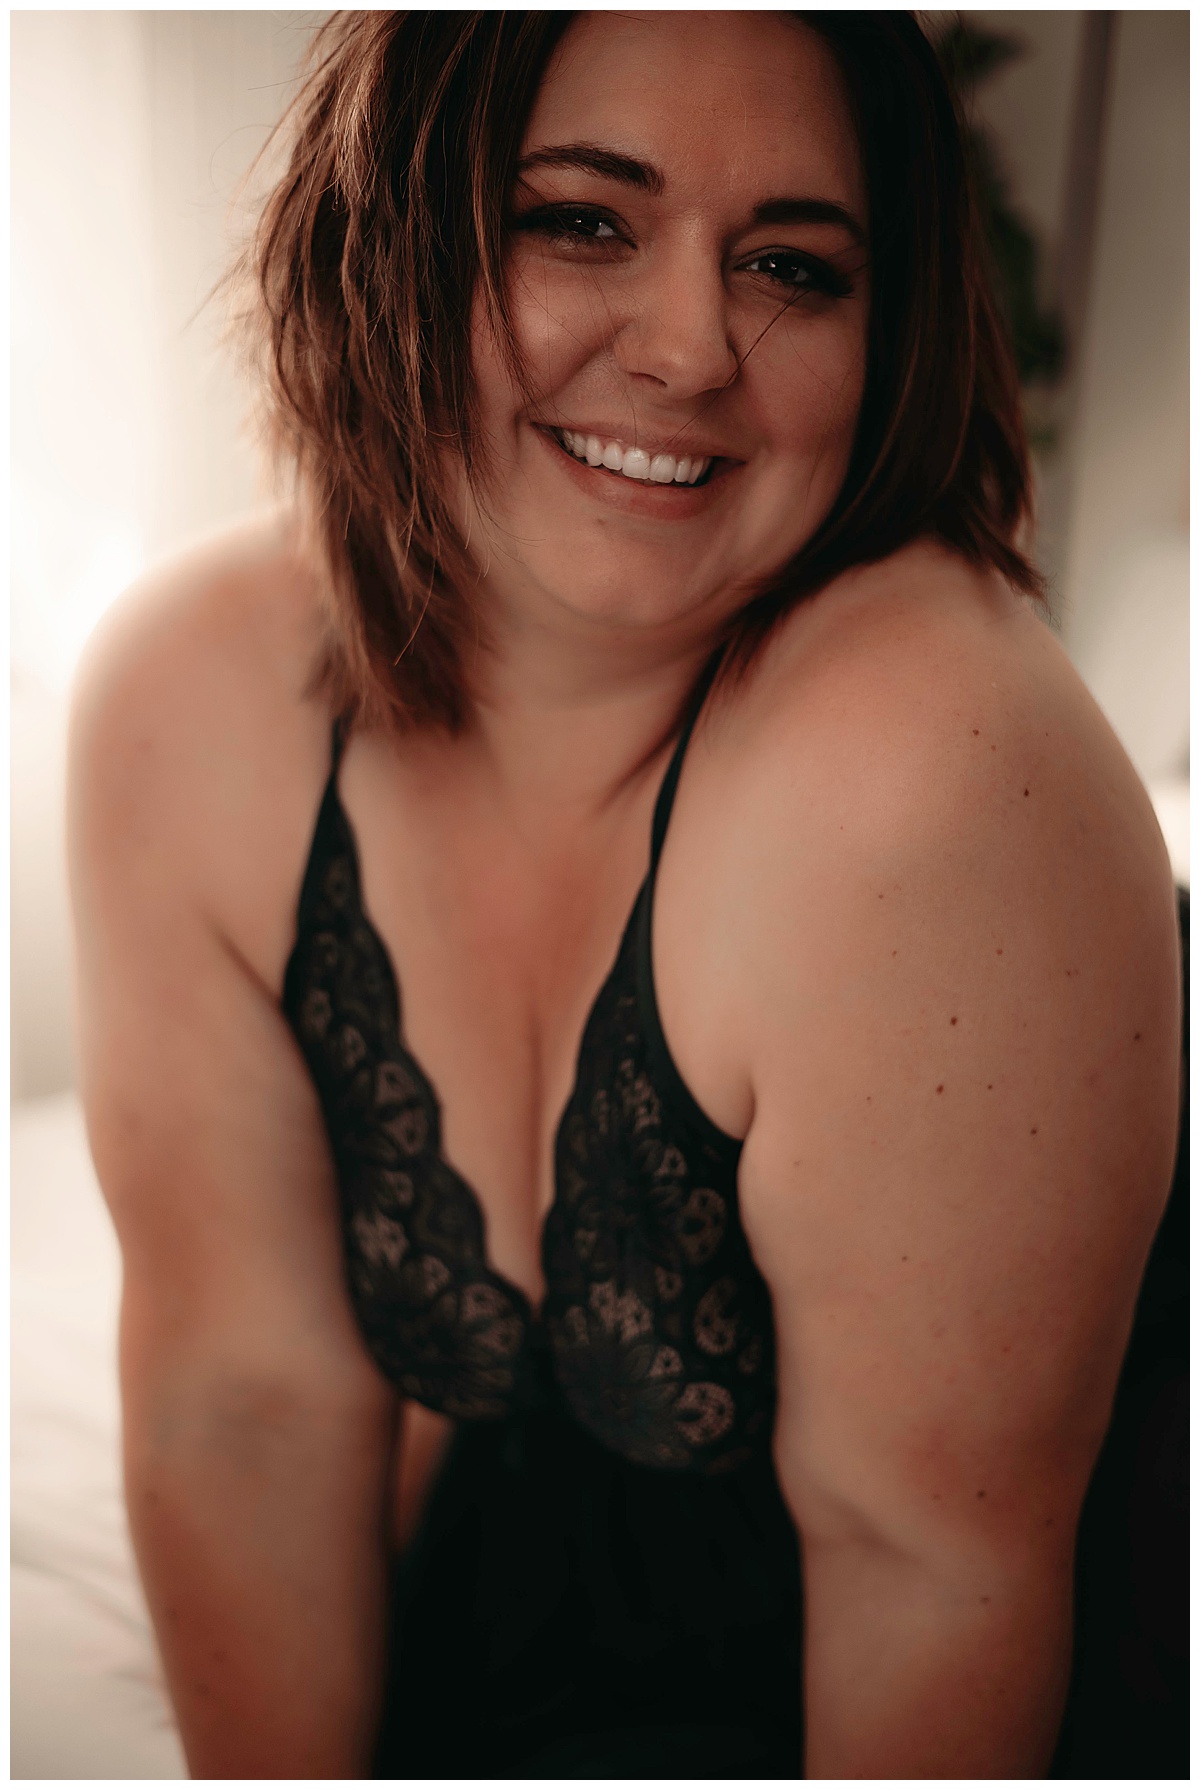 Woman smiles big for Minneapolis Boudoir Photographer